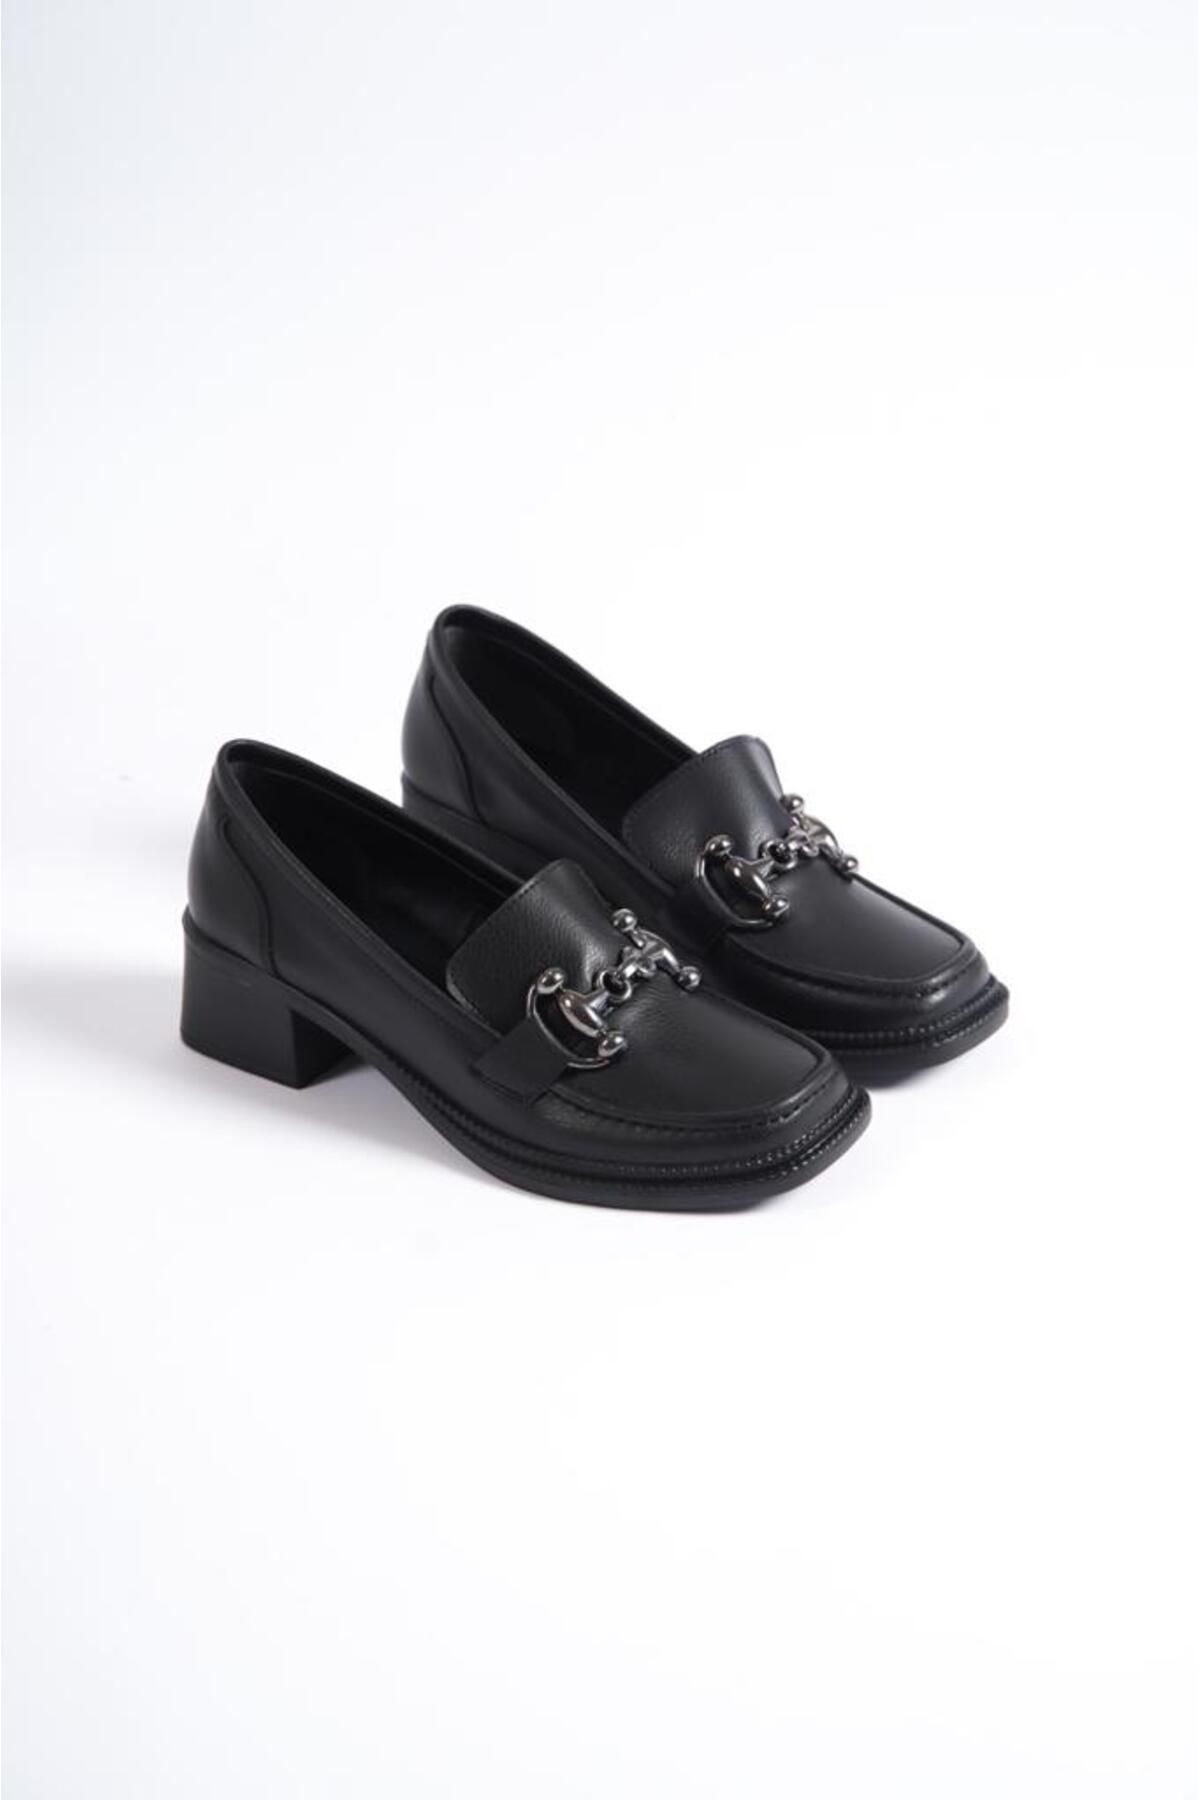 Şenpa Kadın Siyah Cilt Tokalı Topuklu Günlük Ayakkabı